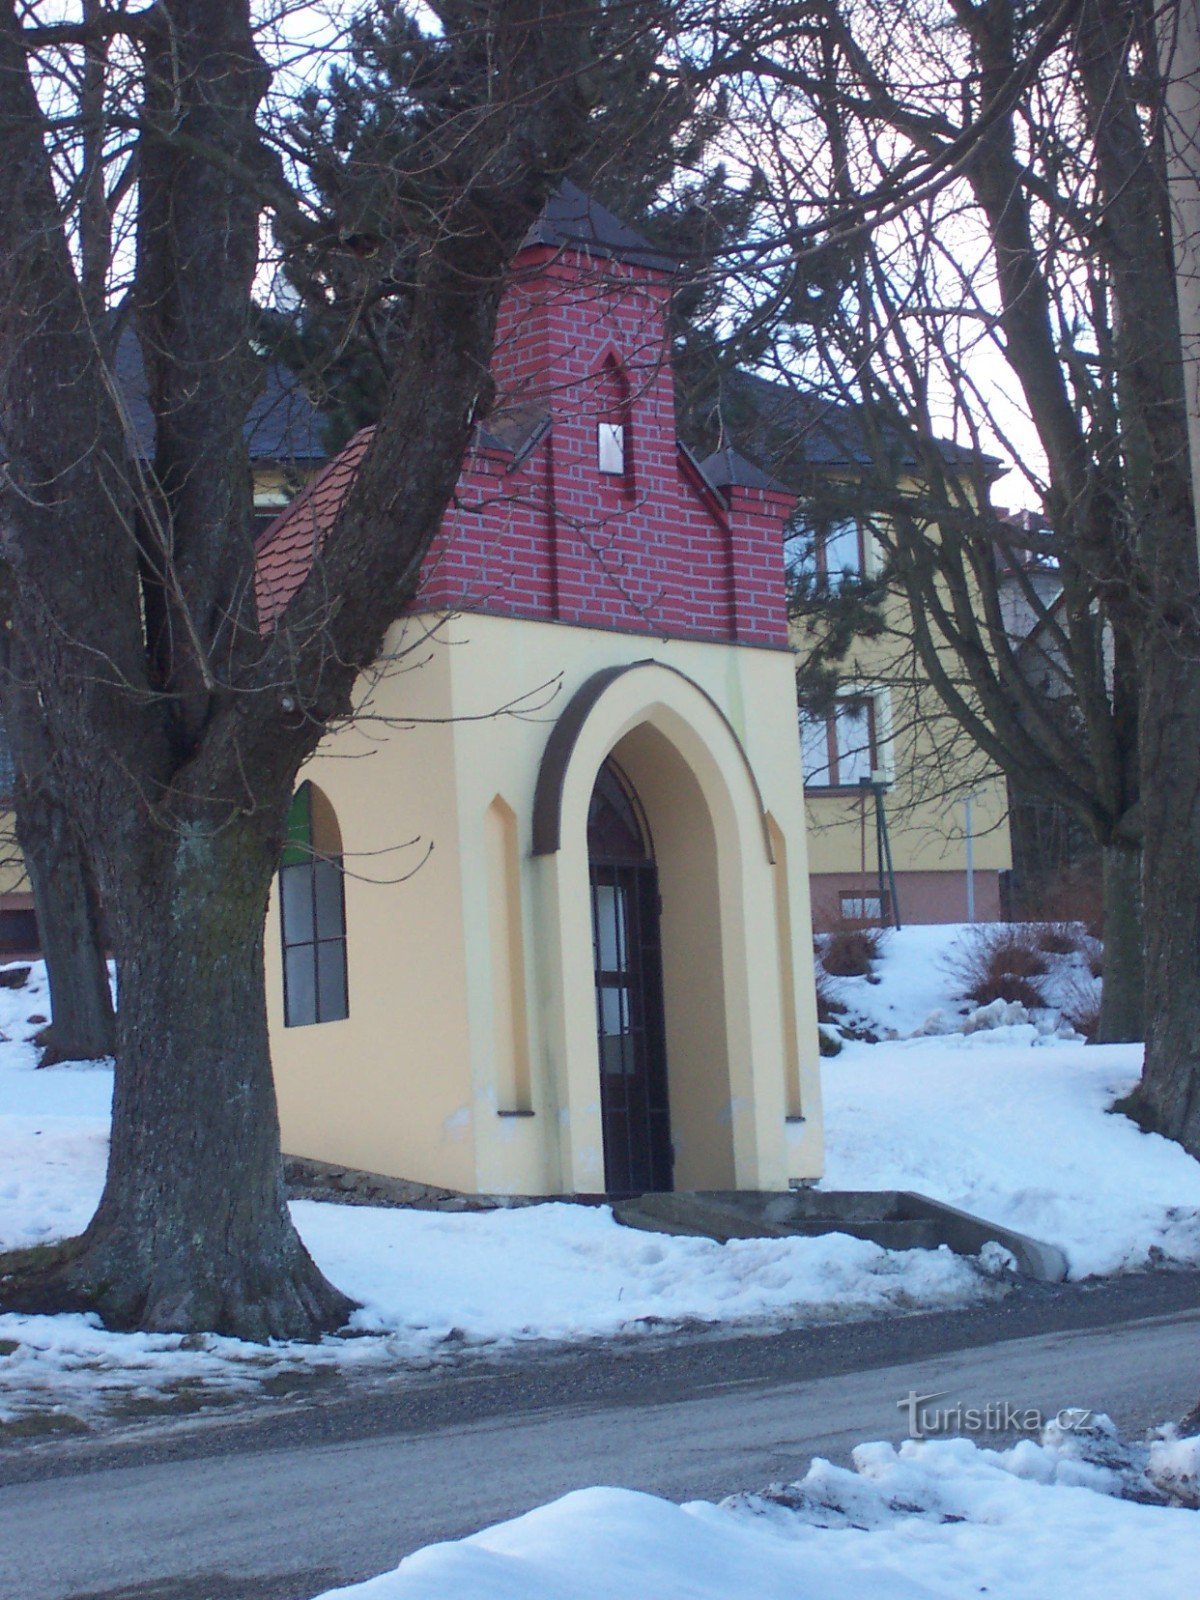 这就是您如何从 Drozdov 的交叉口看到教堂 = 交叉口 Zábřeh - Jedlí